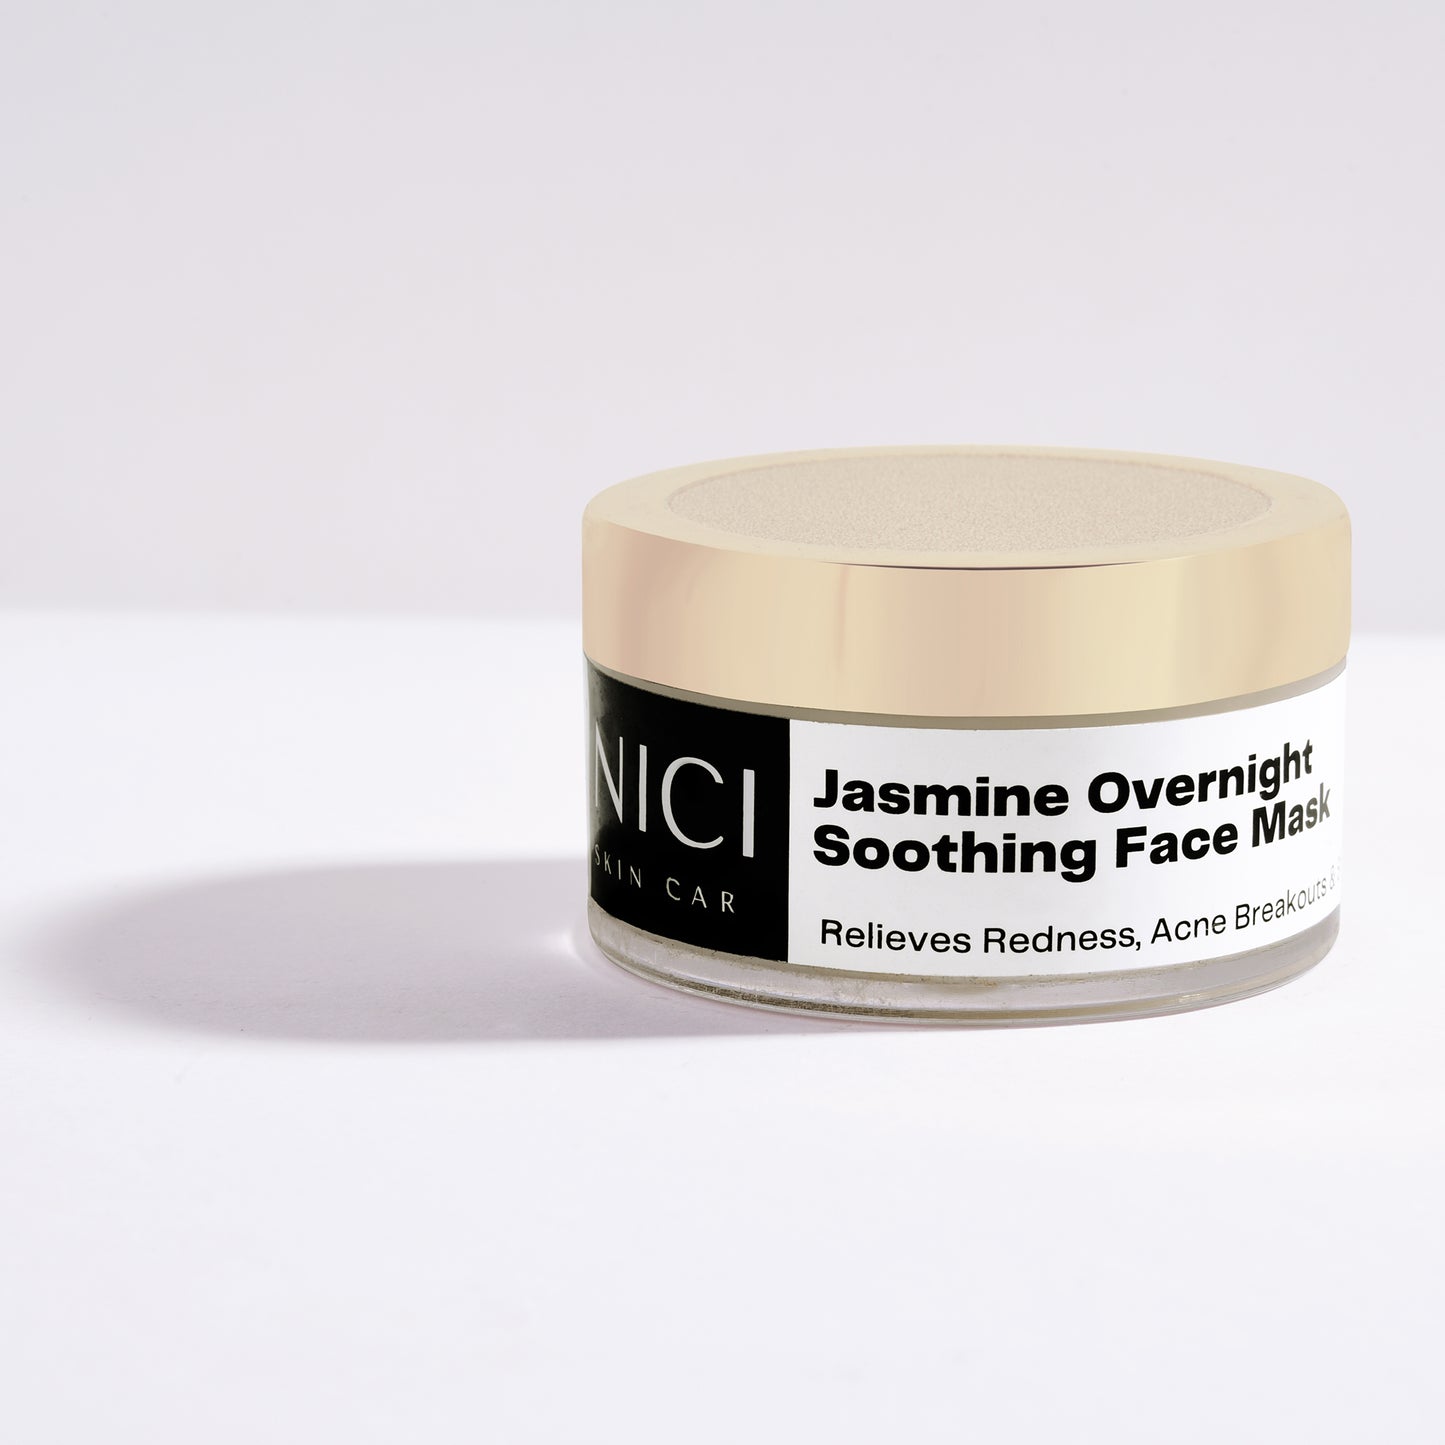 Jasmine Overnight Soothing Face Mask Nici Skin Care